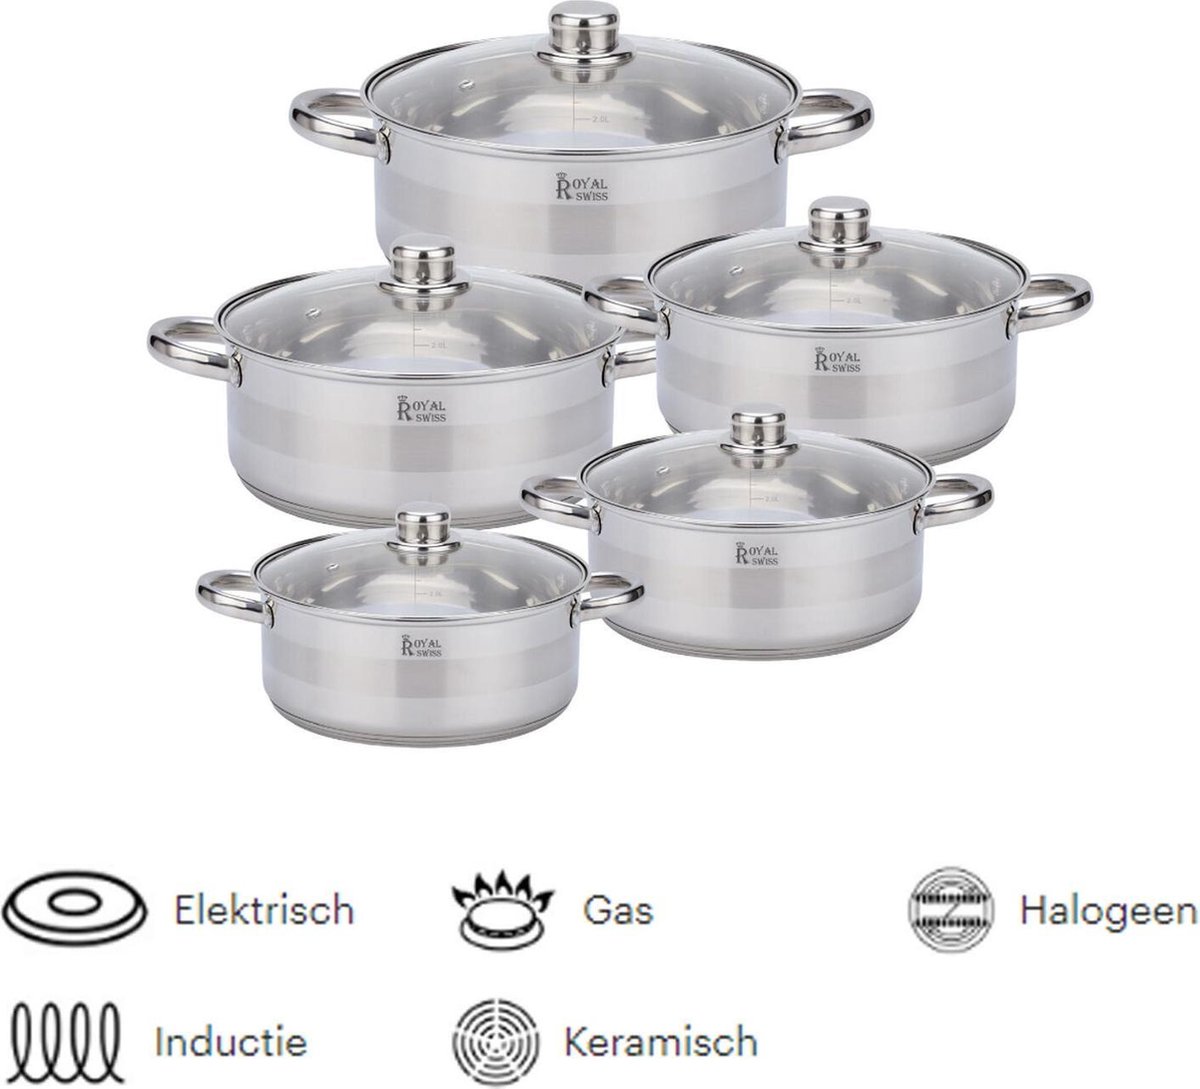 Batterie de cuisine Royal Swiss - 10 pièces | bol.com